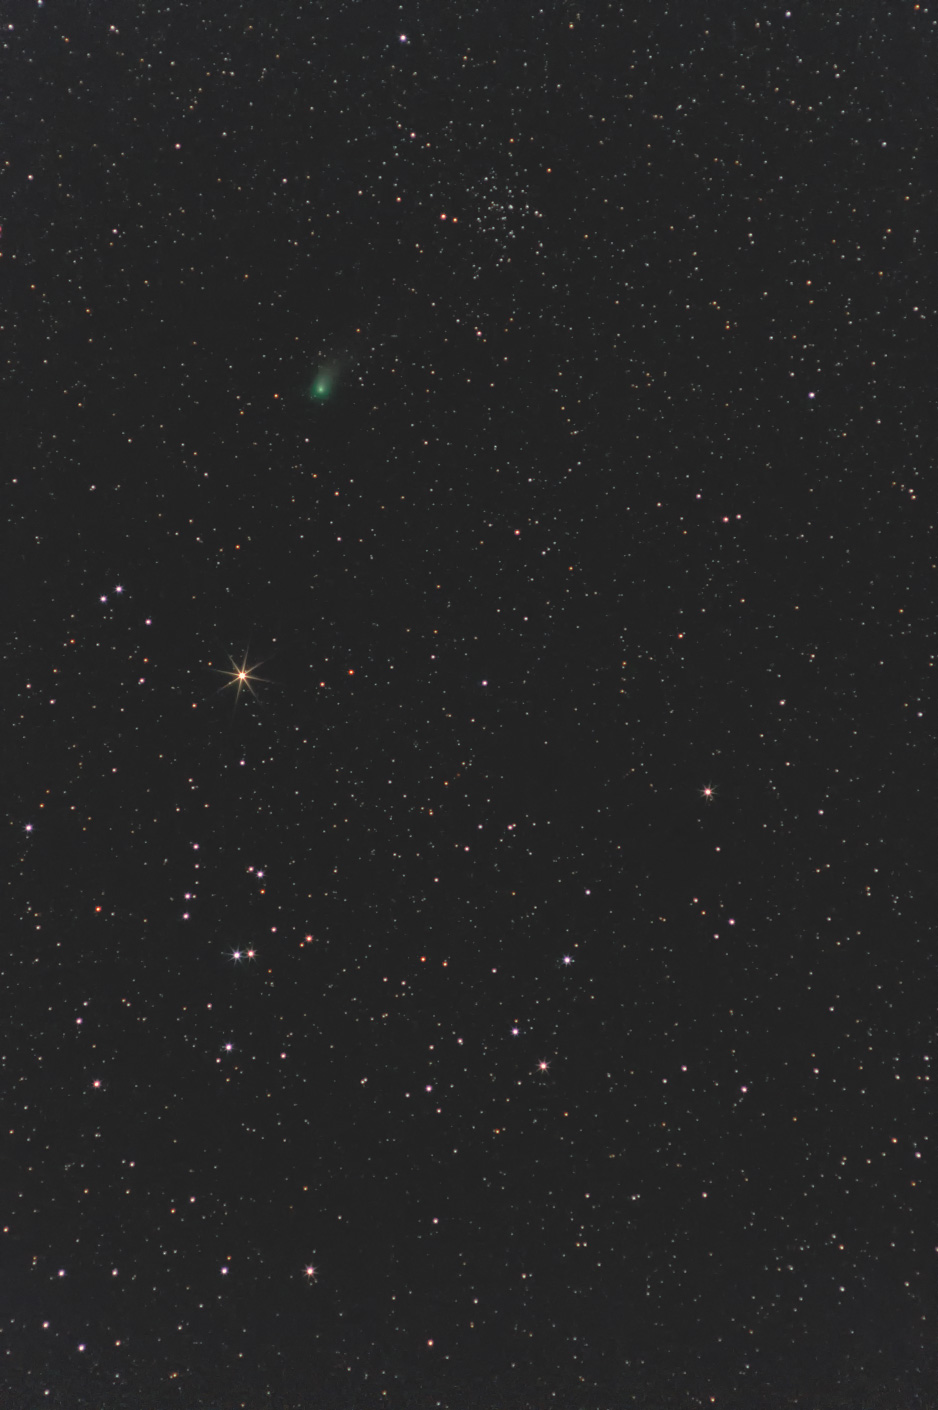 2023/2/14 19:03-19:07 ZTF彗星(C/2022 E3)